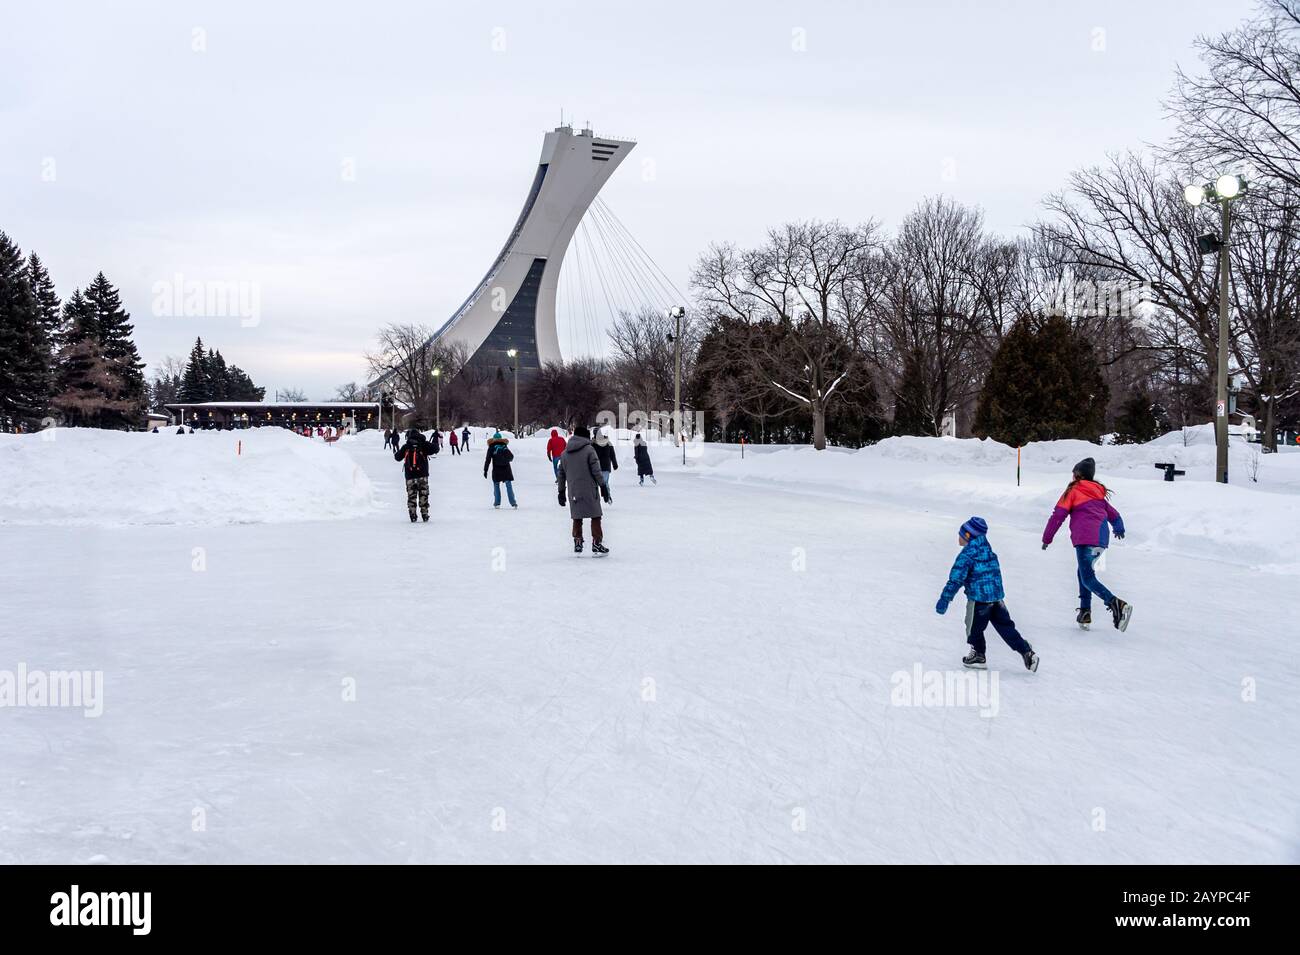 Montréal, CA - 15 février 2020 : patinage sur glace des gens à la patinoire du parc Maisonneuve avec la tour du stade olympique en arrière-plan. Banque D'Images